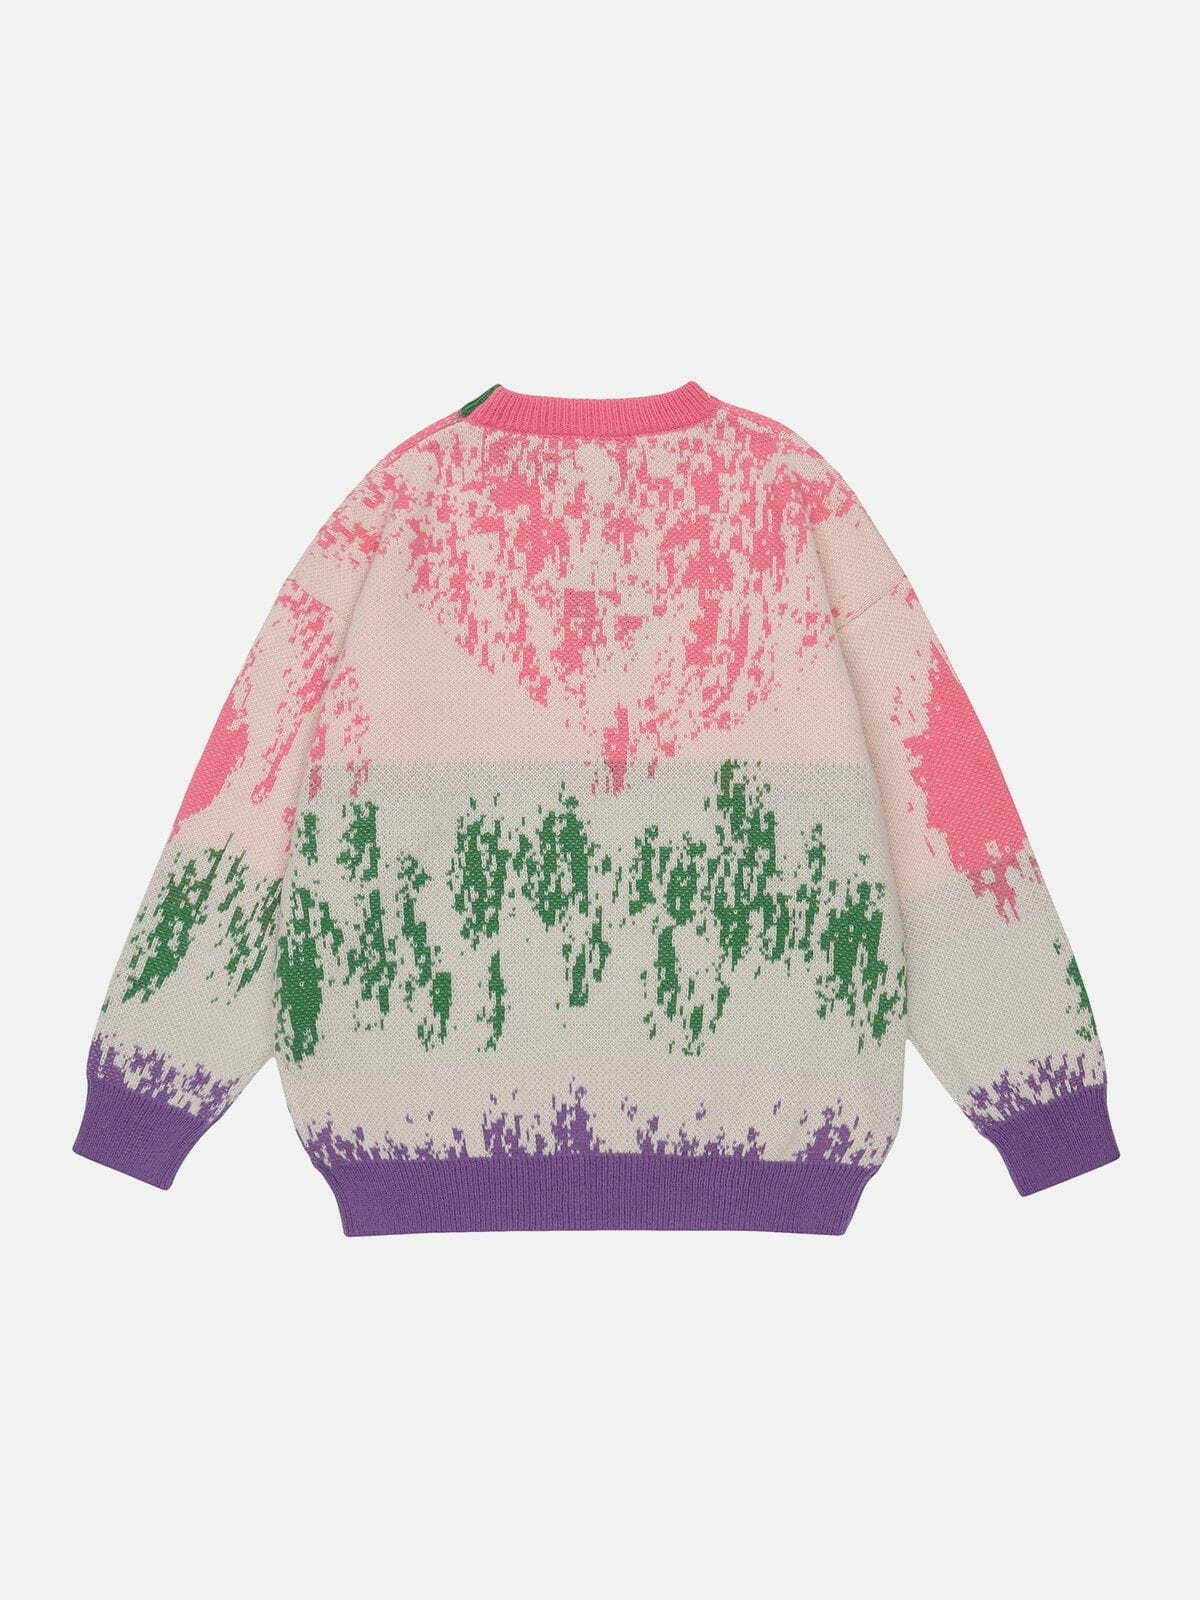 vibrant tiedye knit sweater eclectic streetwear 7888